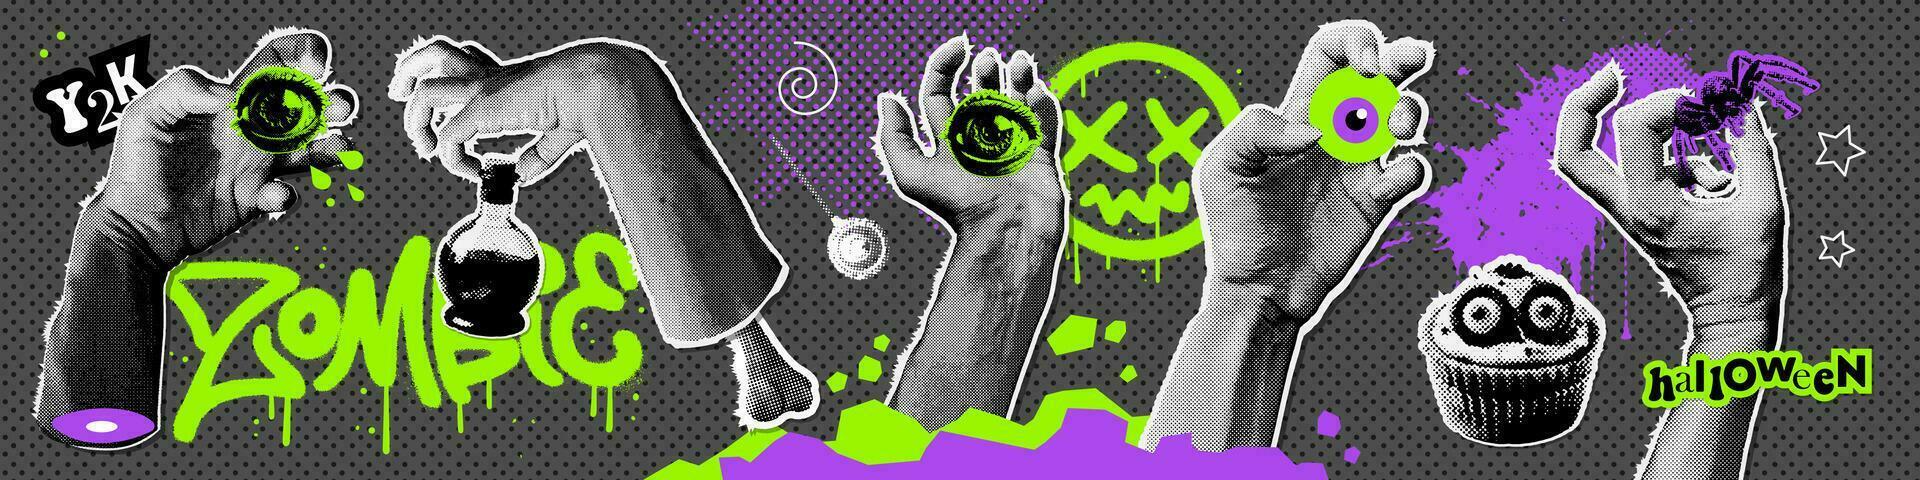 halloween papier stickers reeks met halftone zombie handen stokjes uit van grond of graf en houdt single oog, toverdrank, spin. vector stippel illustratie in gemengd media collage stijl met graffiti